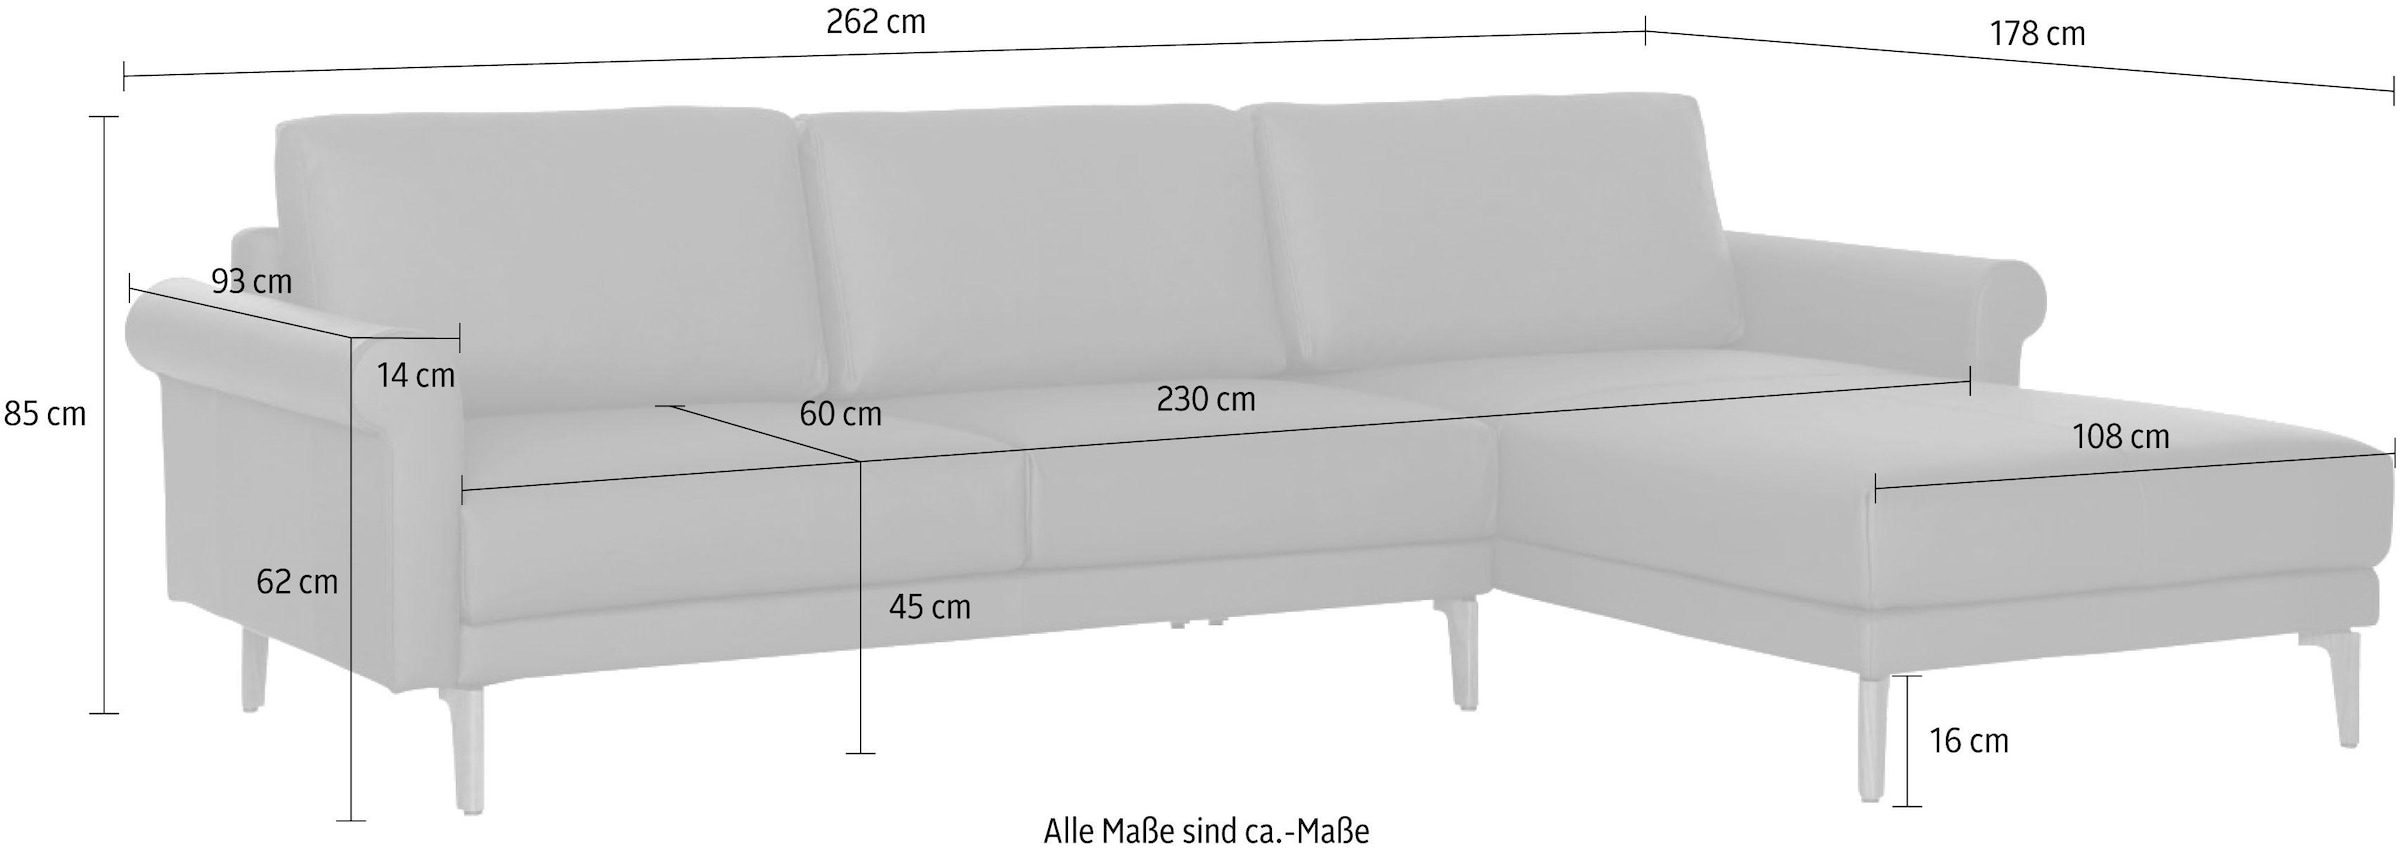 Raten modern 262 »hs.450«, Breite Fuß bestellen sofa cm, auf Ecksofa Nussbaum Landhaus, Schnecke hülsta Armlehne